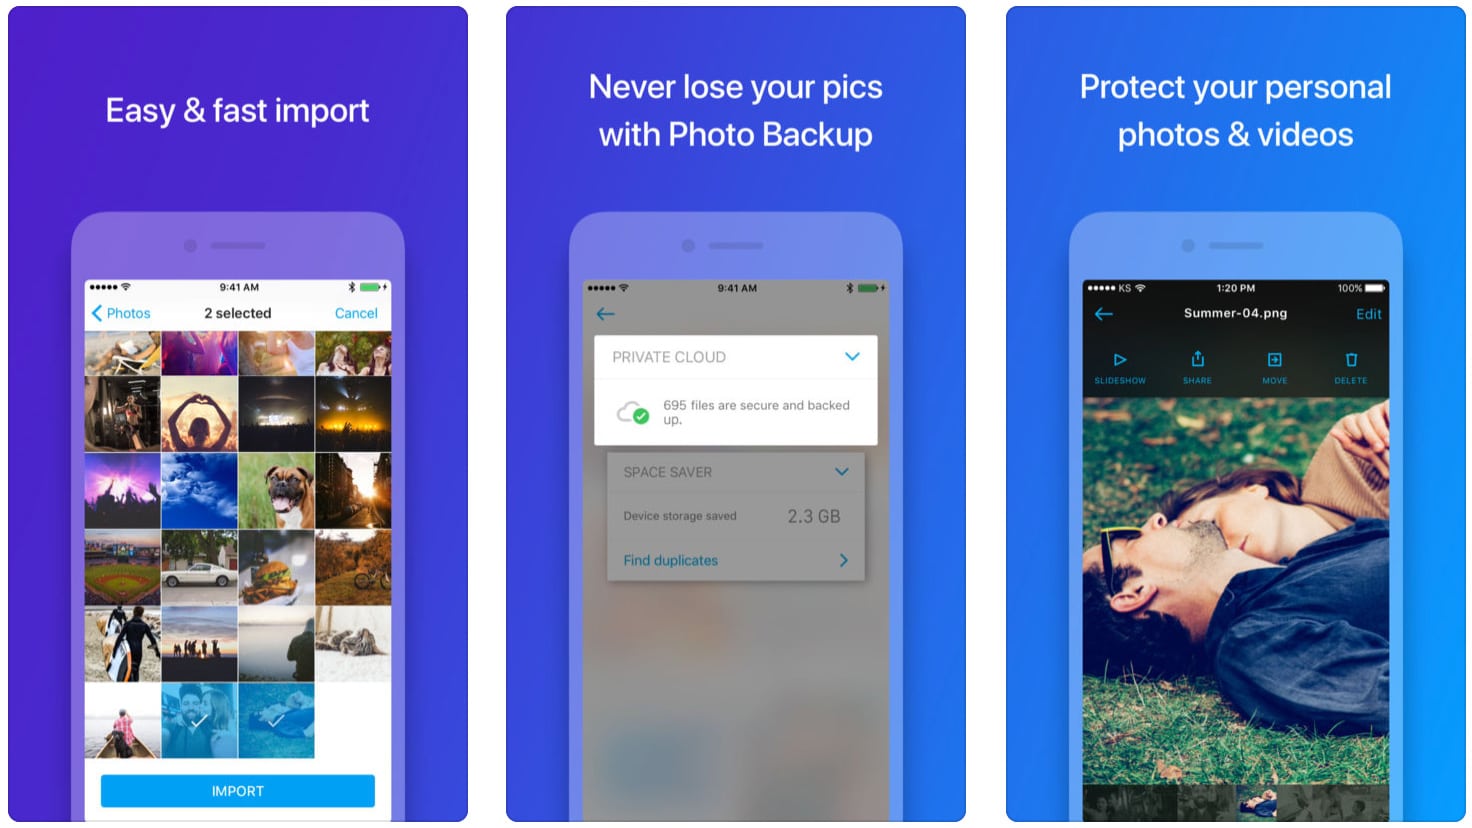 أفضل 5 تطبيقات لإخفاء الصور على iPhone - iPhonebyte 1